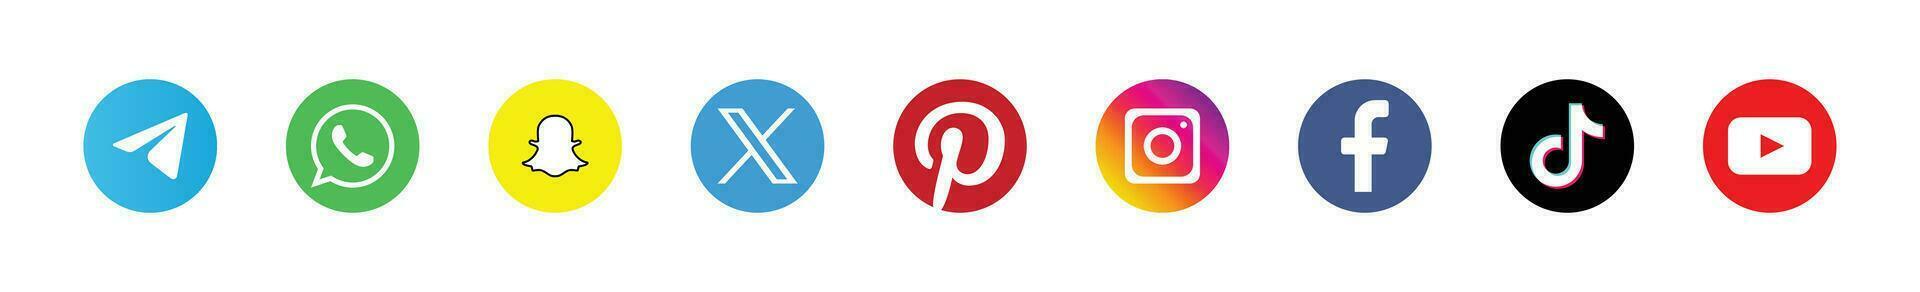 Major Social Media Brand Logos - Icons for Facebook, Instagram, Twitter, YouTube vector